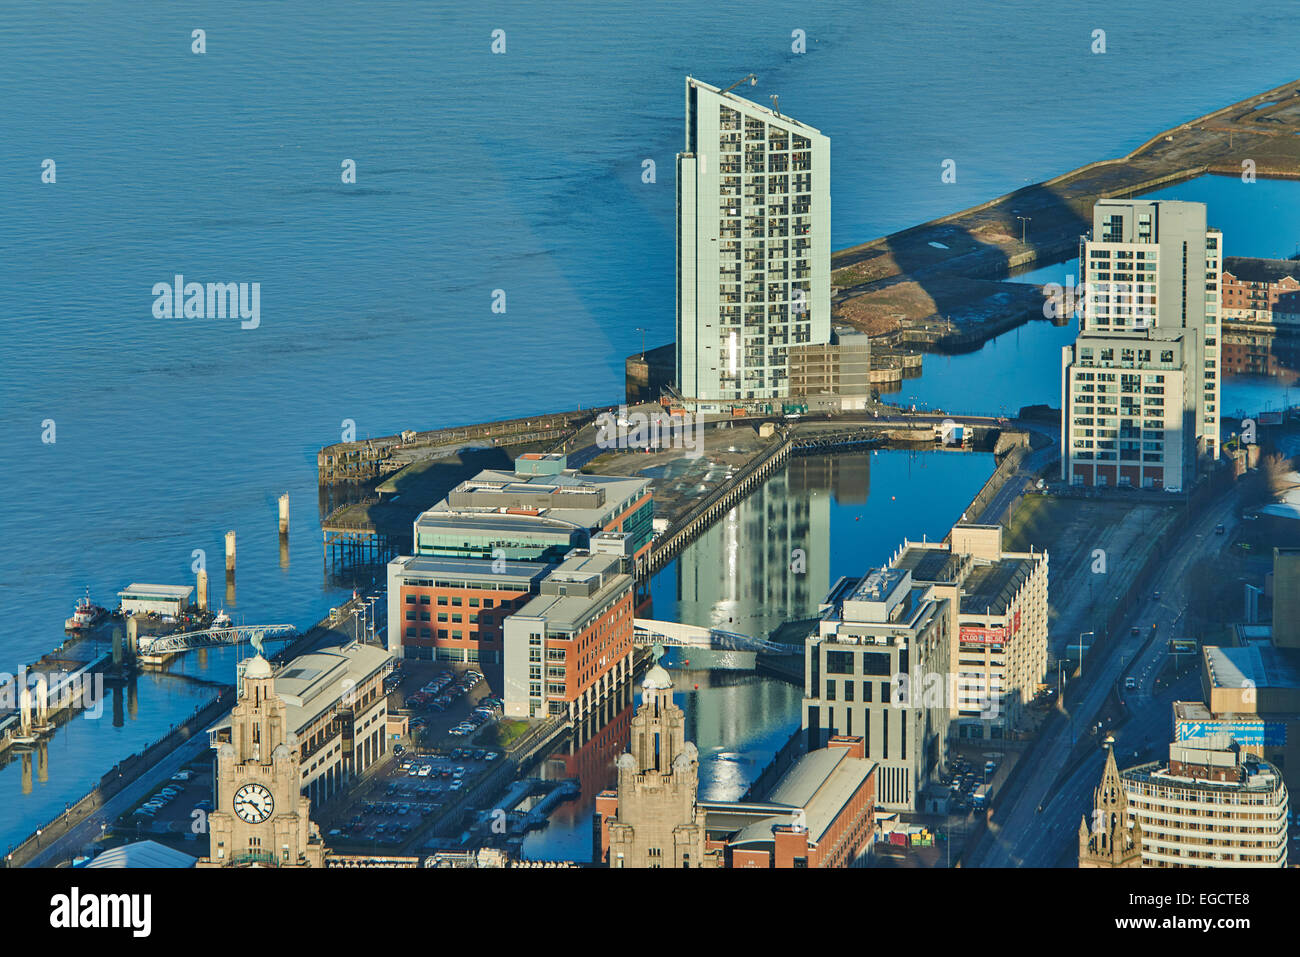 Fotografia aerea di Princes Dock e gli edifici vicini, Liverpool Foto Stock